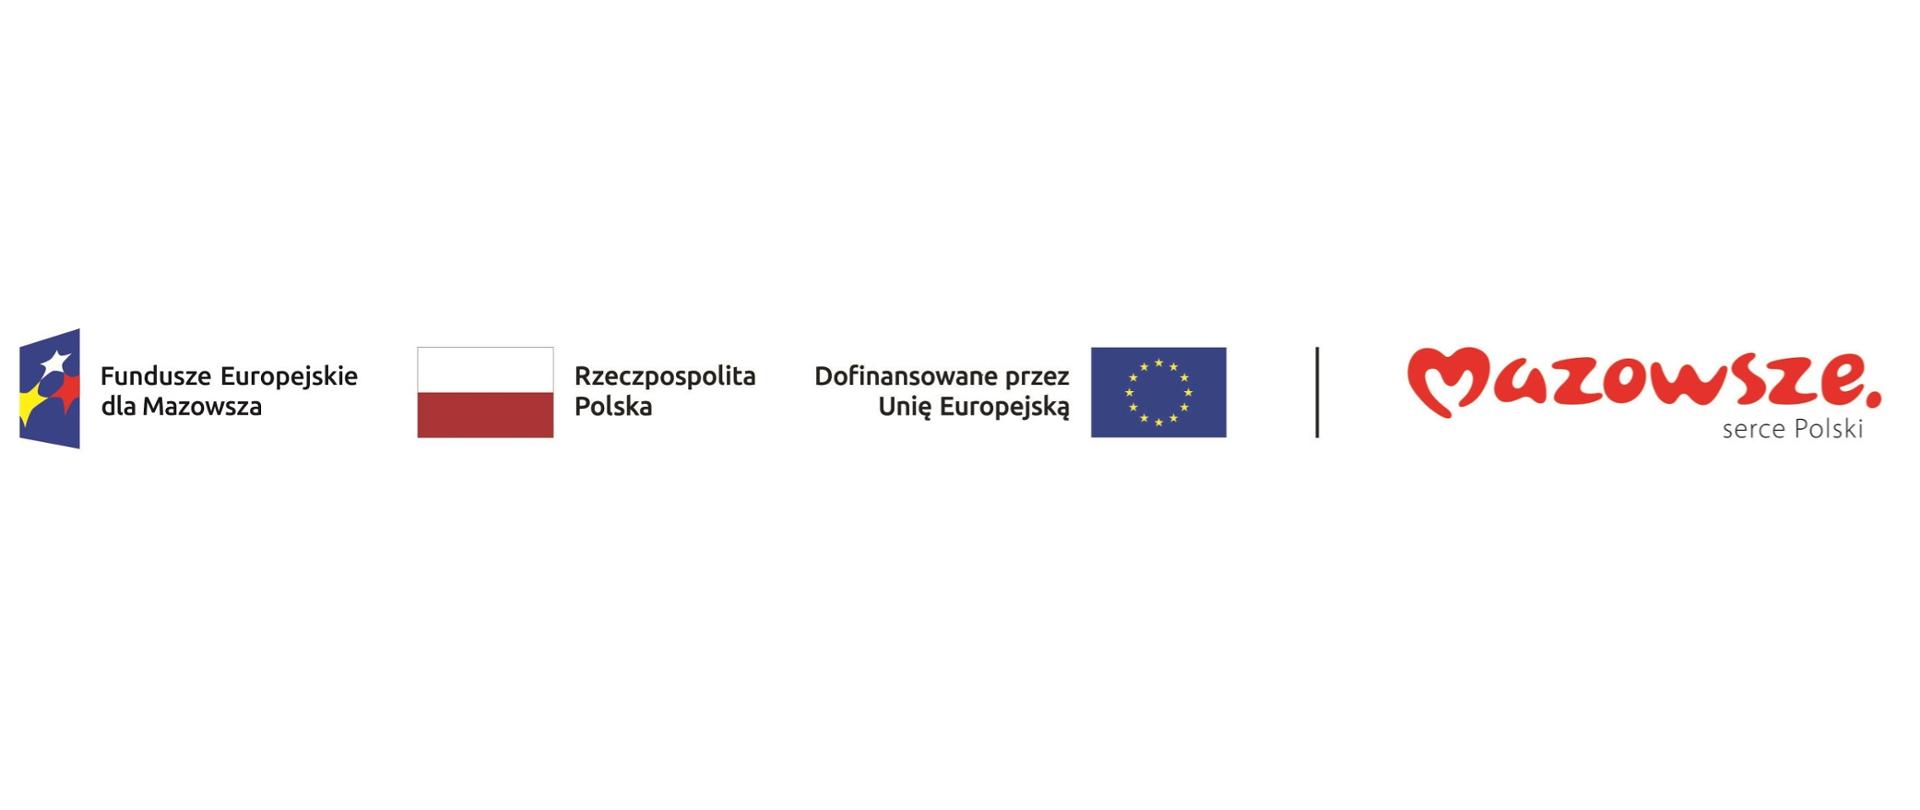 Logotypy Fundusze Europejskie dla Mazowsza, Flaga Rzeczpospolitej Polskiej, Flaga Unii Europejskiej, logotyp Mazowsze serce Polski